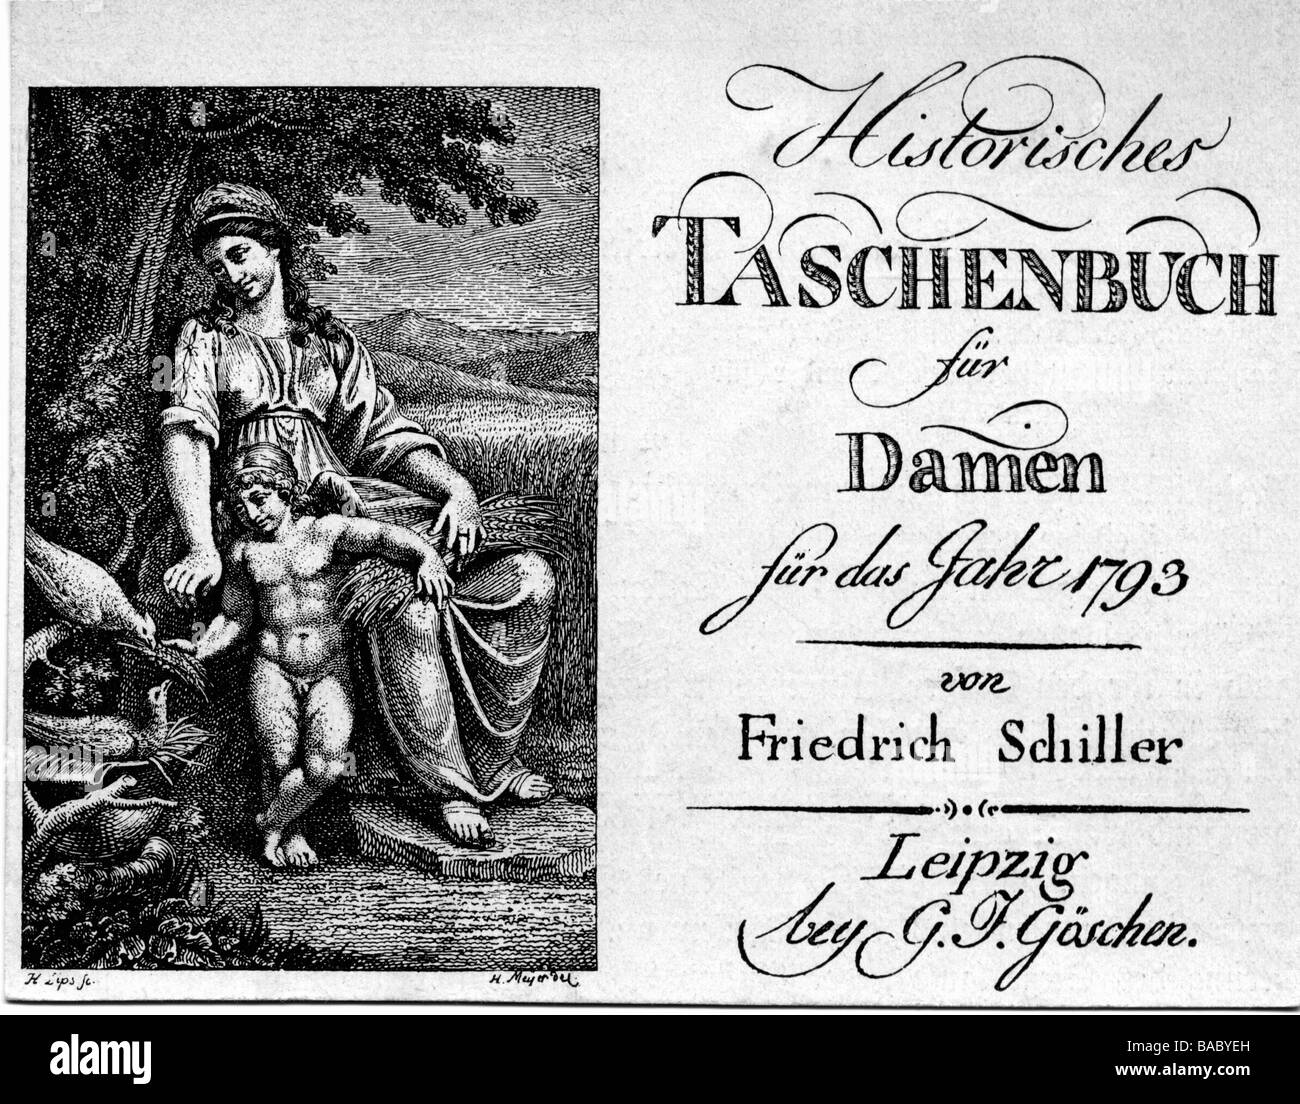 Schiller, Friedrich, 10.11.1759 - 9.5.1805, autore/scrittore tedesco, "Historiches Taschenbuch für Damen", 1793, pubblicato da Georg Joachim Göschen, Lipsia, titolo di rame di H. Lips dopo H. Meyer, Foto Stock